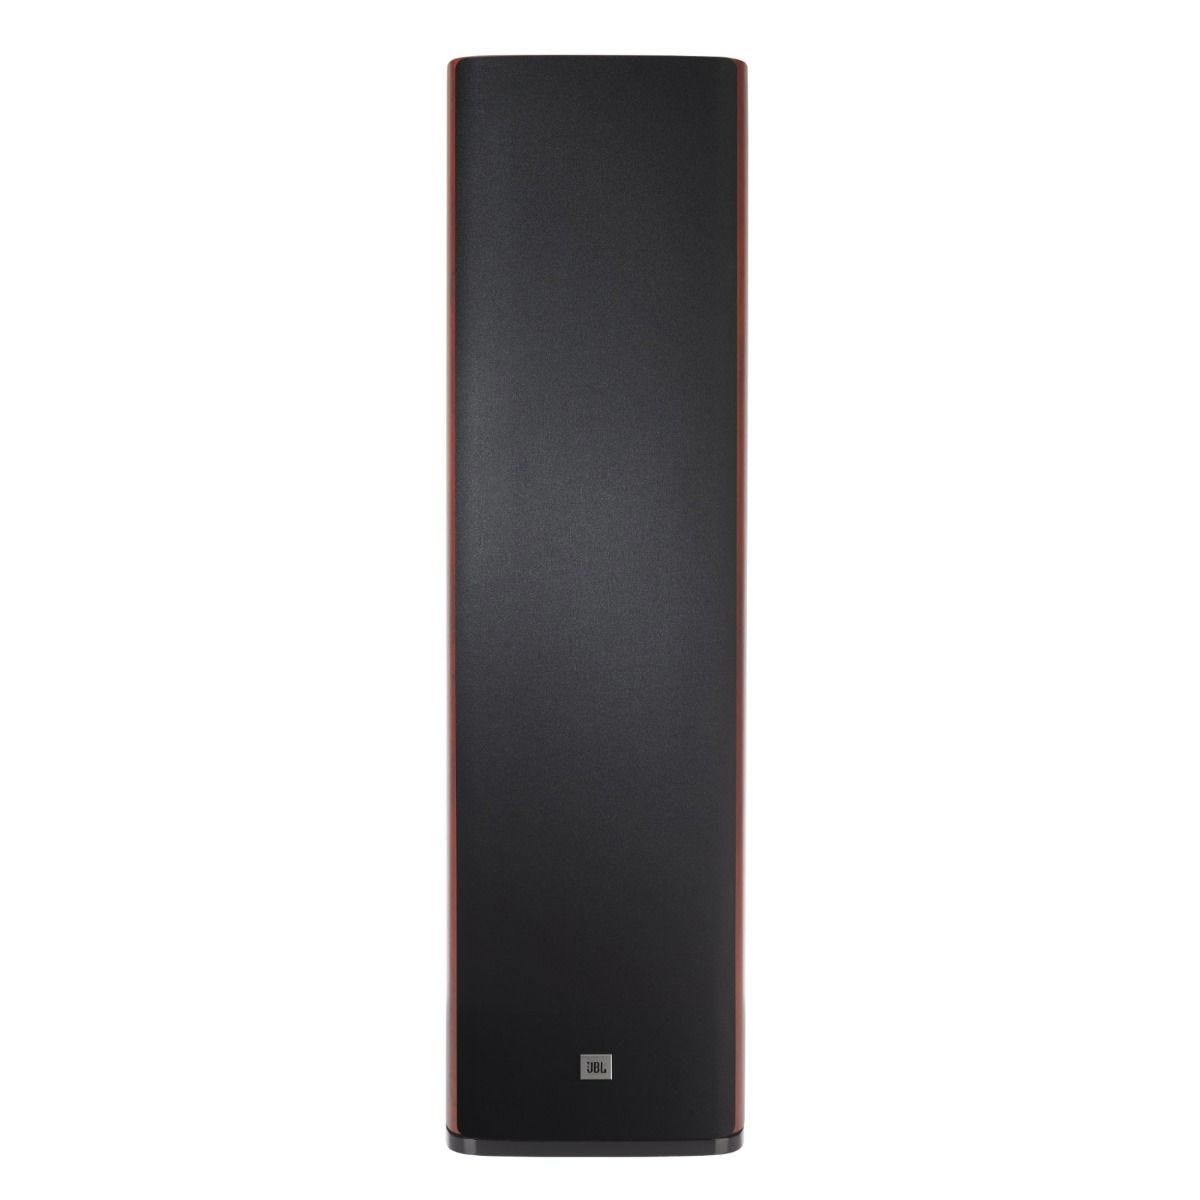 JBL Studio 690 8" Floorstanding Speakers - Black